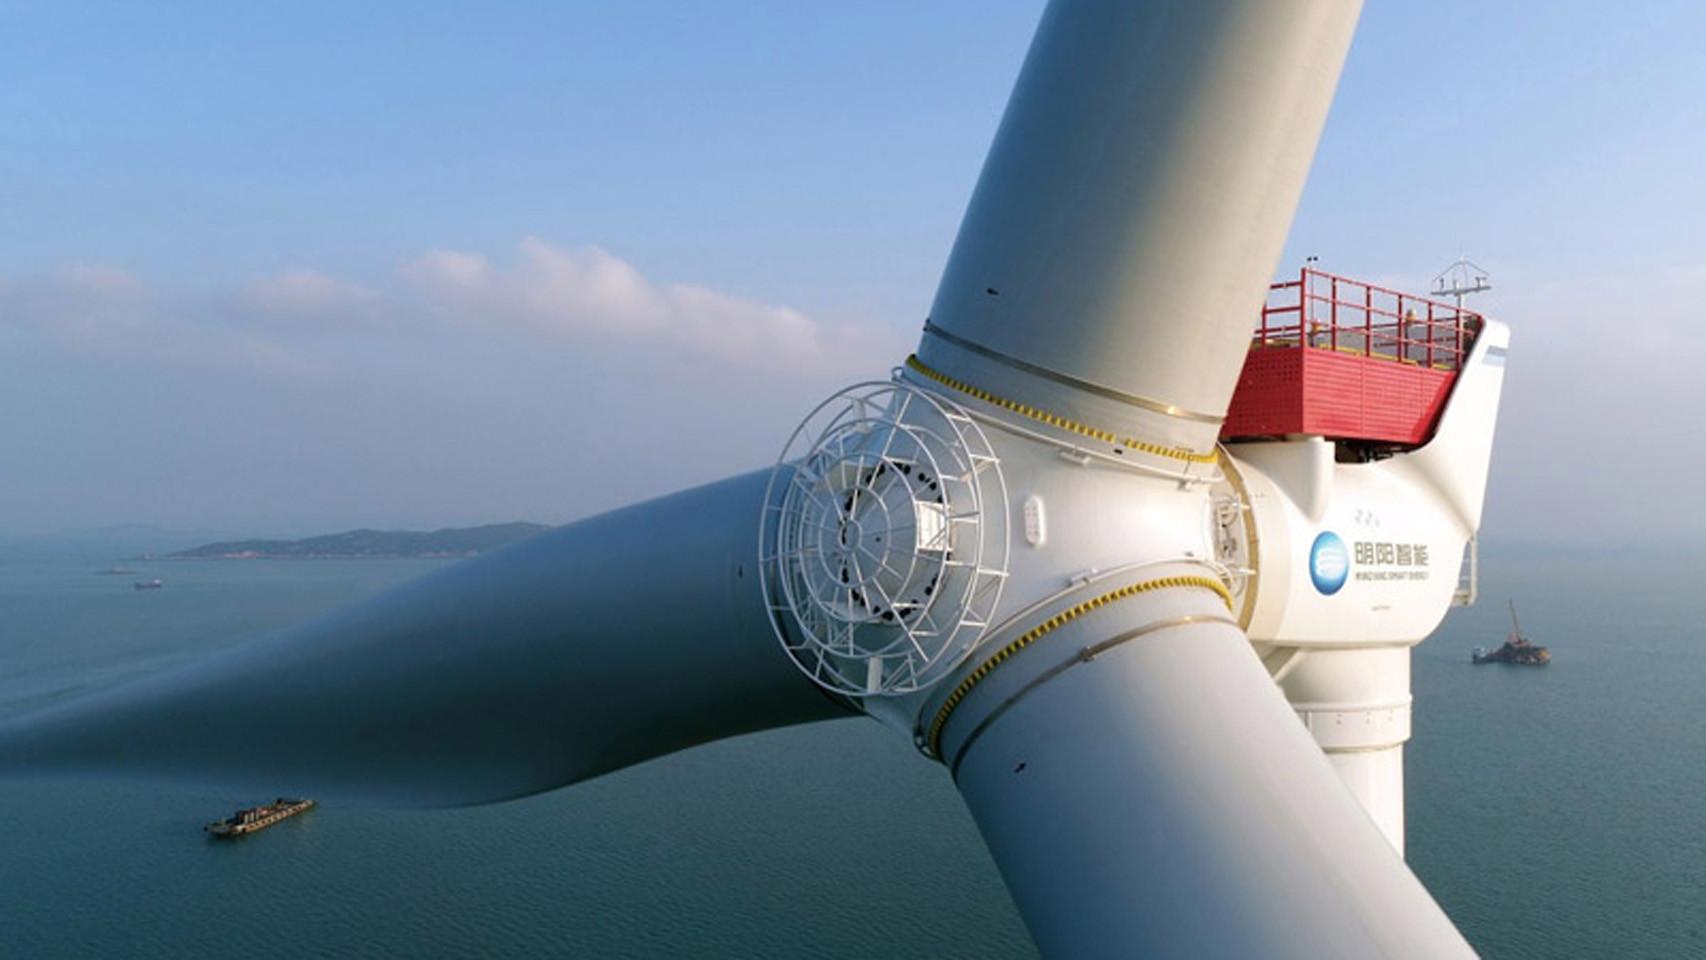 Así es el aerogenerador más grande del mundo: 260 metros de rotor para dar  luz a 40.000 hogares